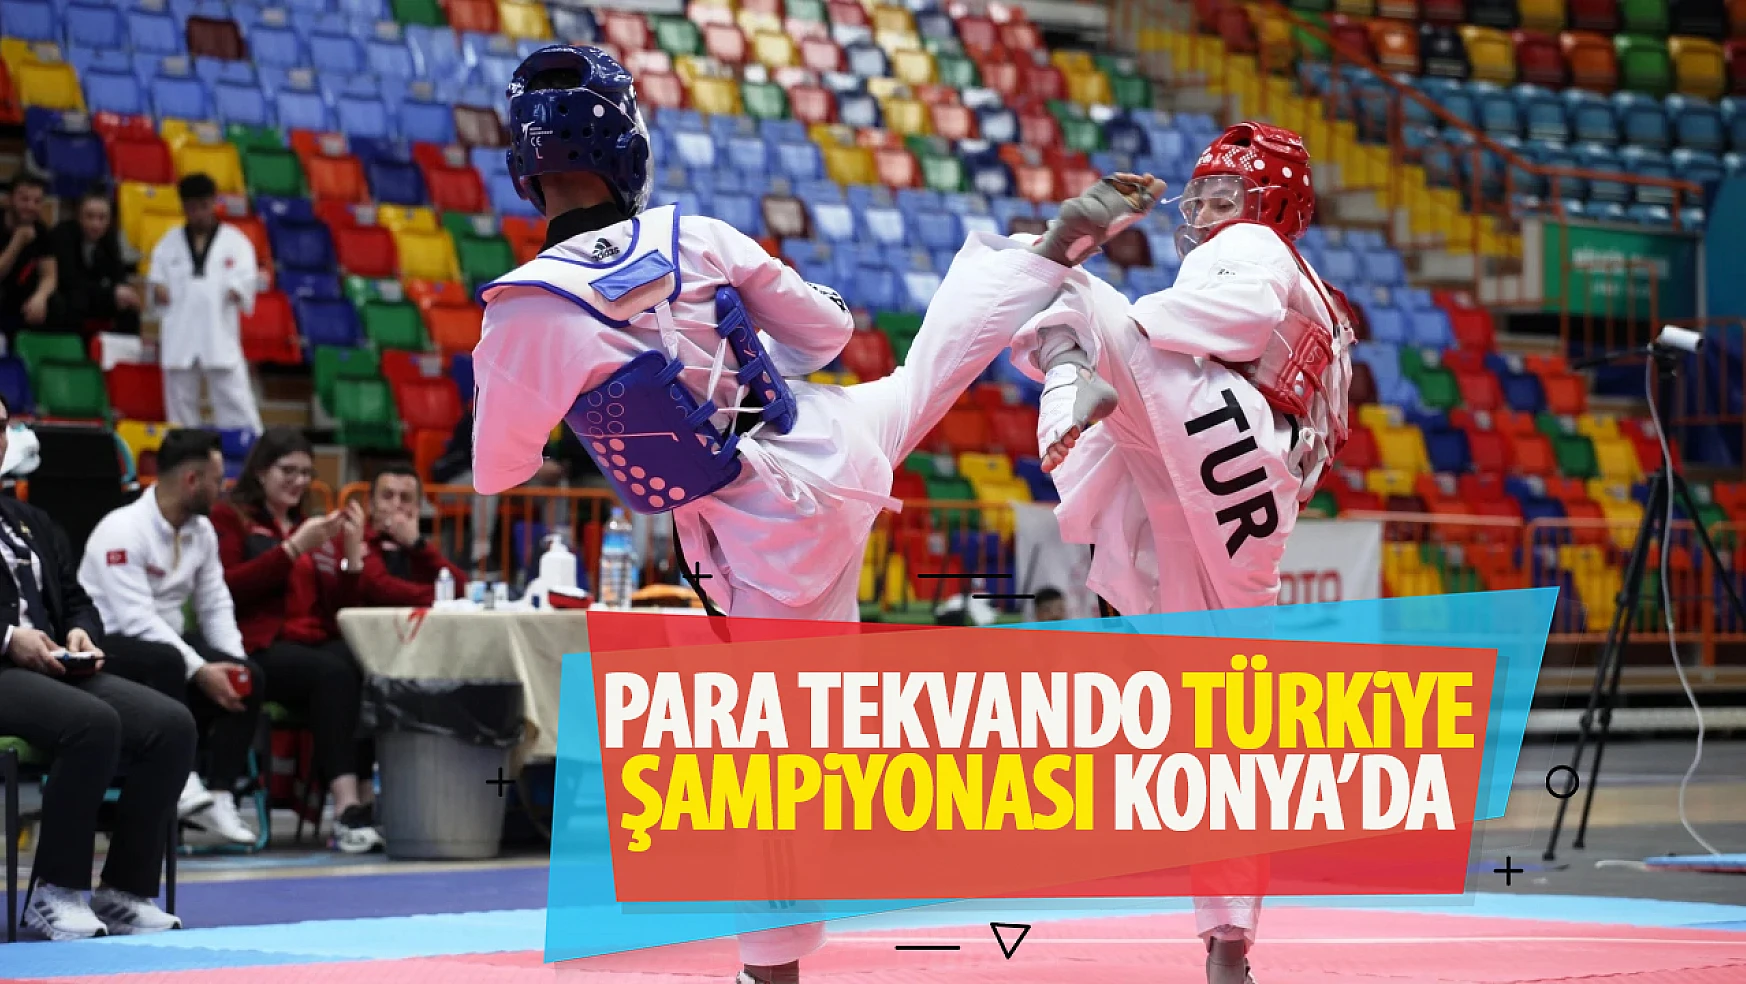 Konya'da Para Tekvando Türkiye Şampiyonası